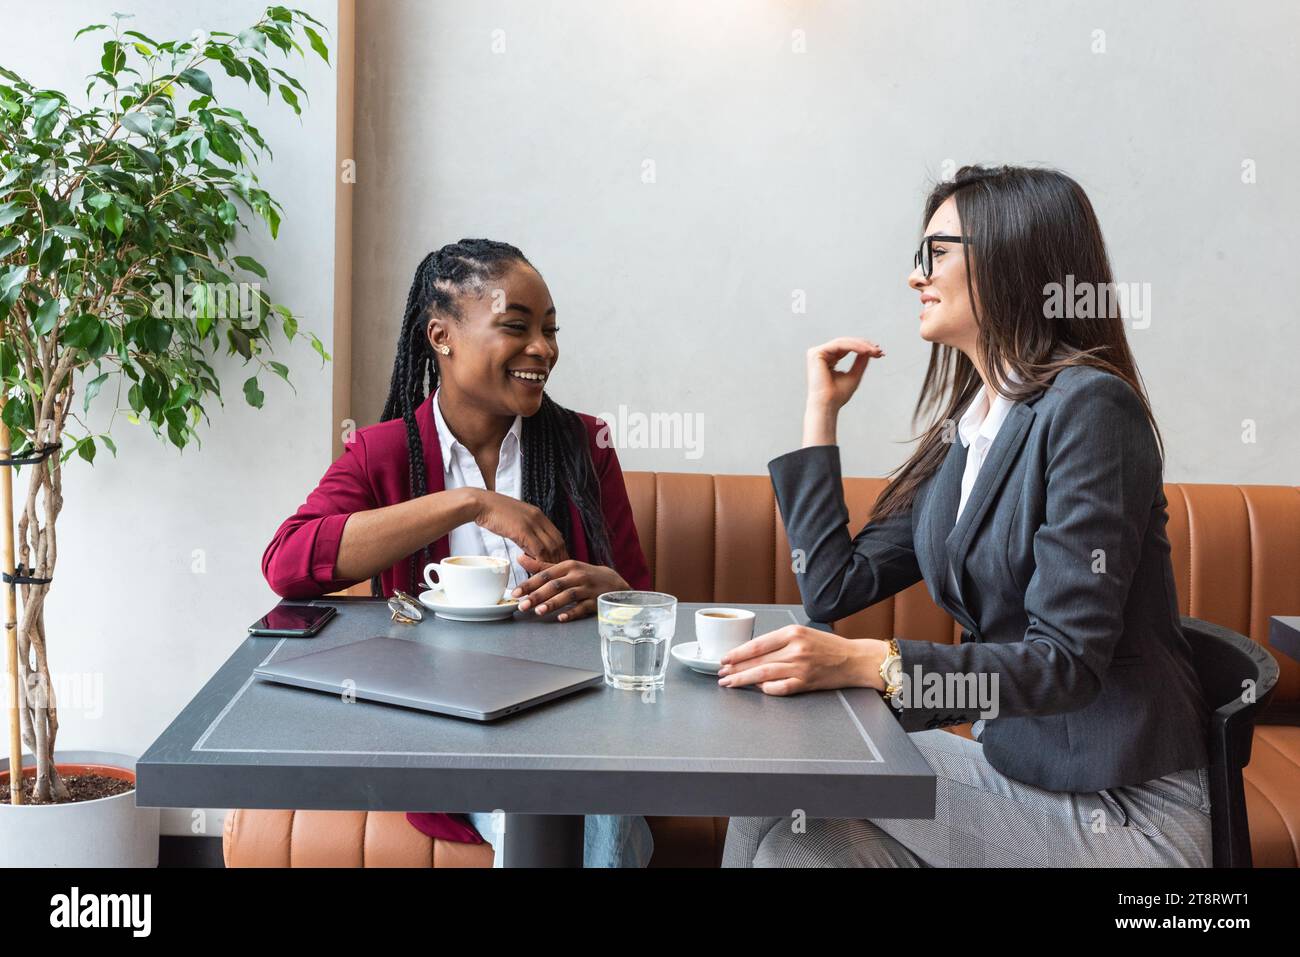 Deux jeunes collègues d'affaires prenant une pause dans la cafétéria voisine buvant un café parlant de la vie privée, pour mieux se connaître. Staf Banque D'Images